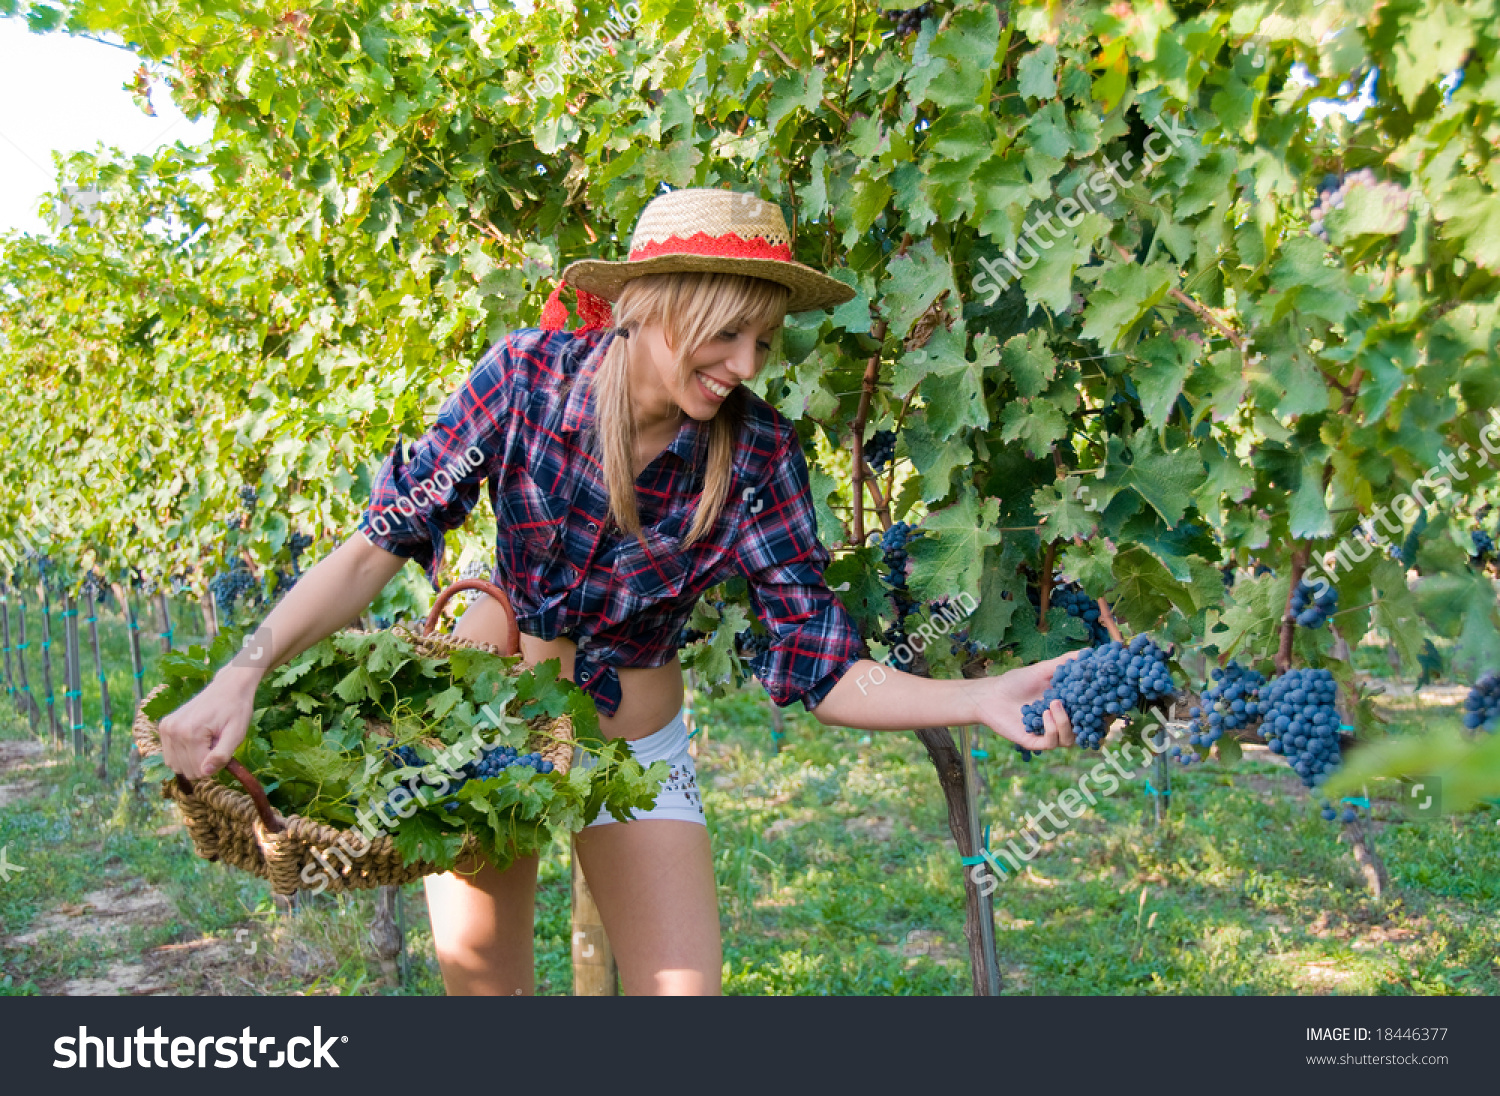 Супер детка в виноградной роще